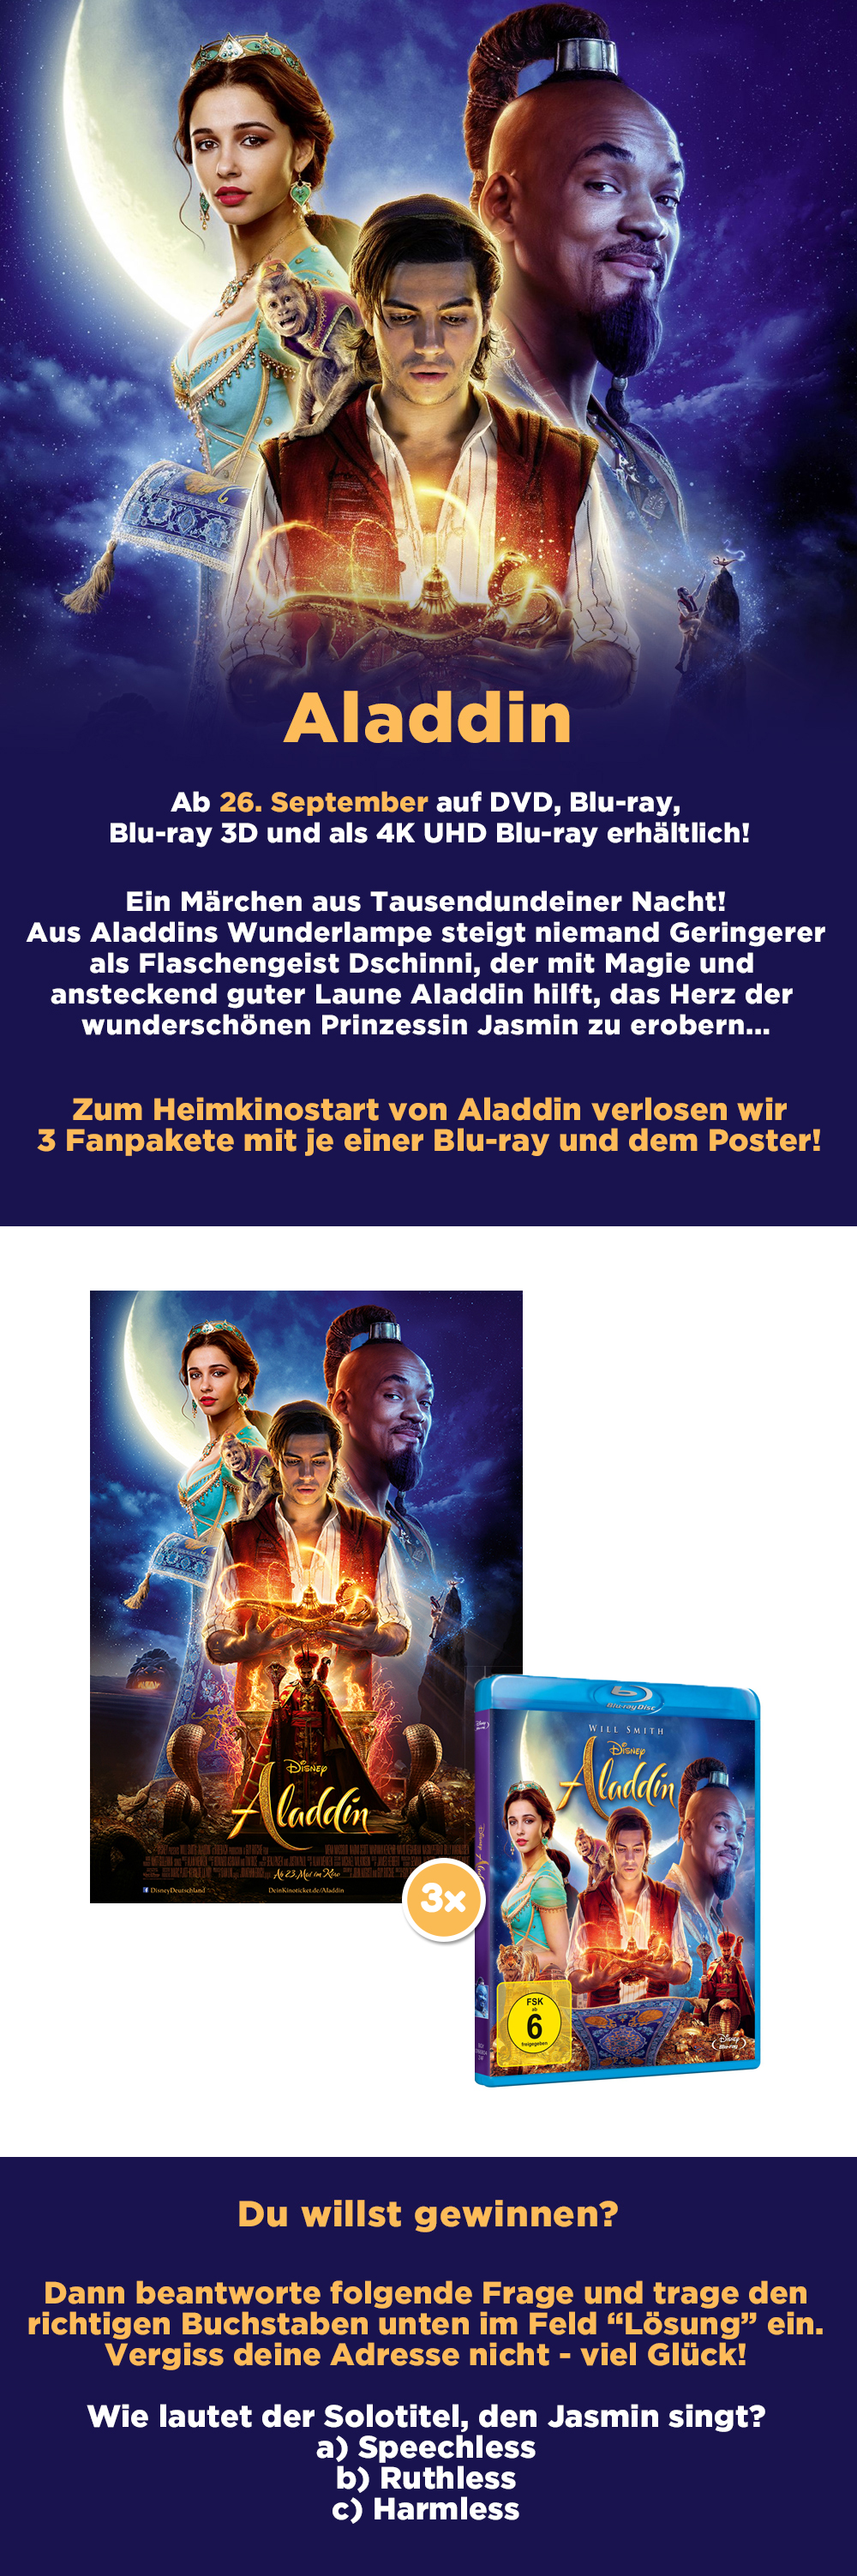 Bild 1:Gewinne die "Aladdin"-Blu-ray und das Filmposter!